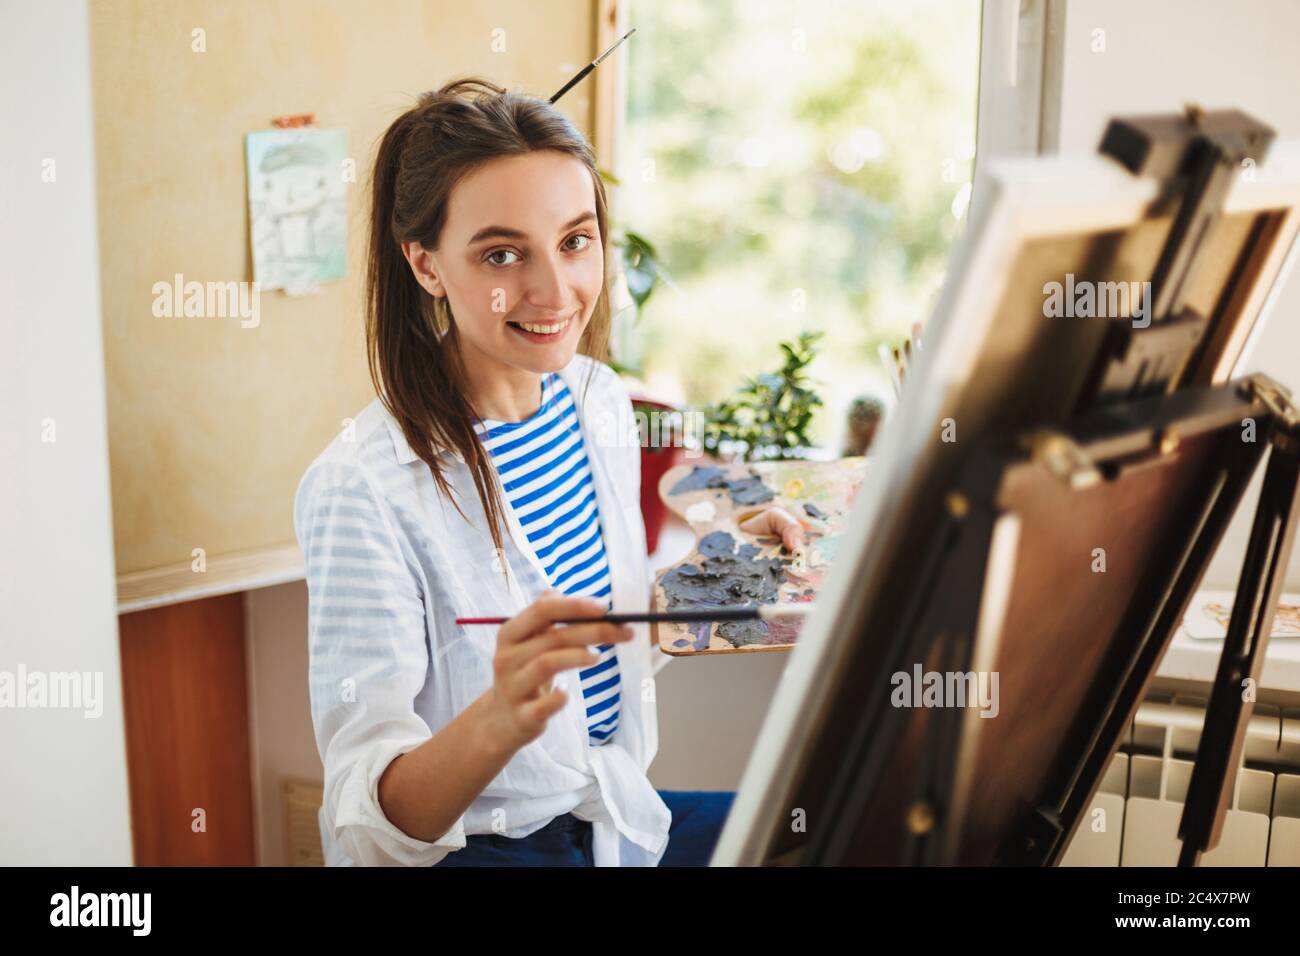 Jolie fille souriante en chemise blanche et T-shirt rayé tenant la brosse à peinture dans la main heureux de regarder dans l'appareil photo tout en dessinant sur le chevalet à la maison Banque D'Images